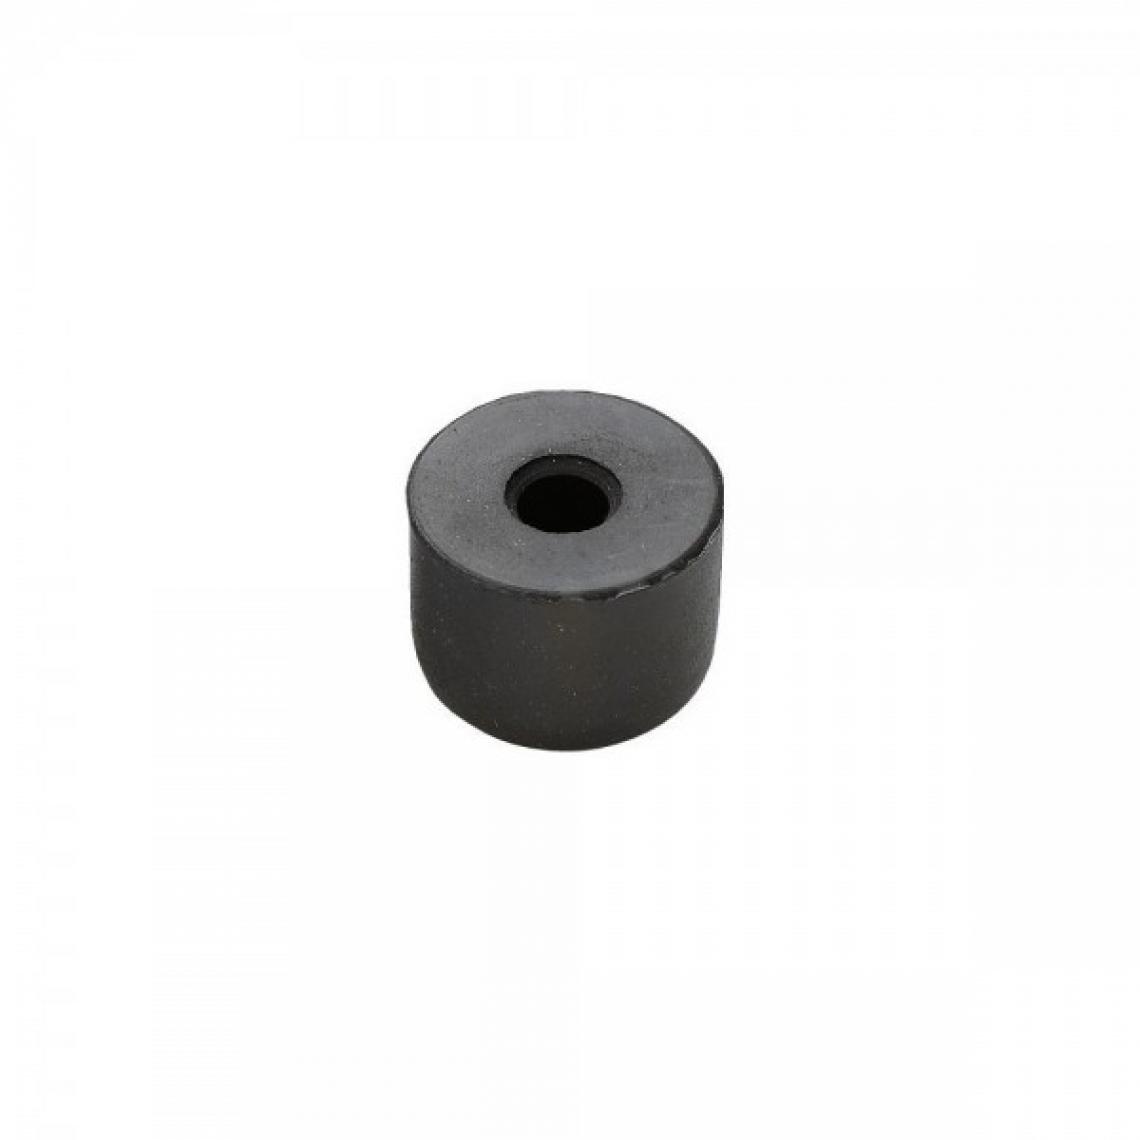 Facom - Embout de rechange neoprène noir 60mm pour massette - Packs d'outillage électroportatif